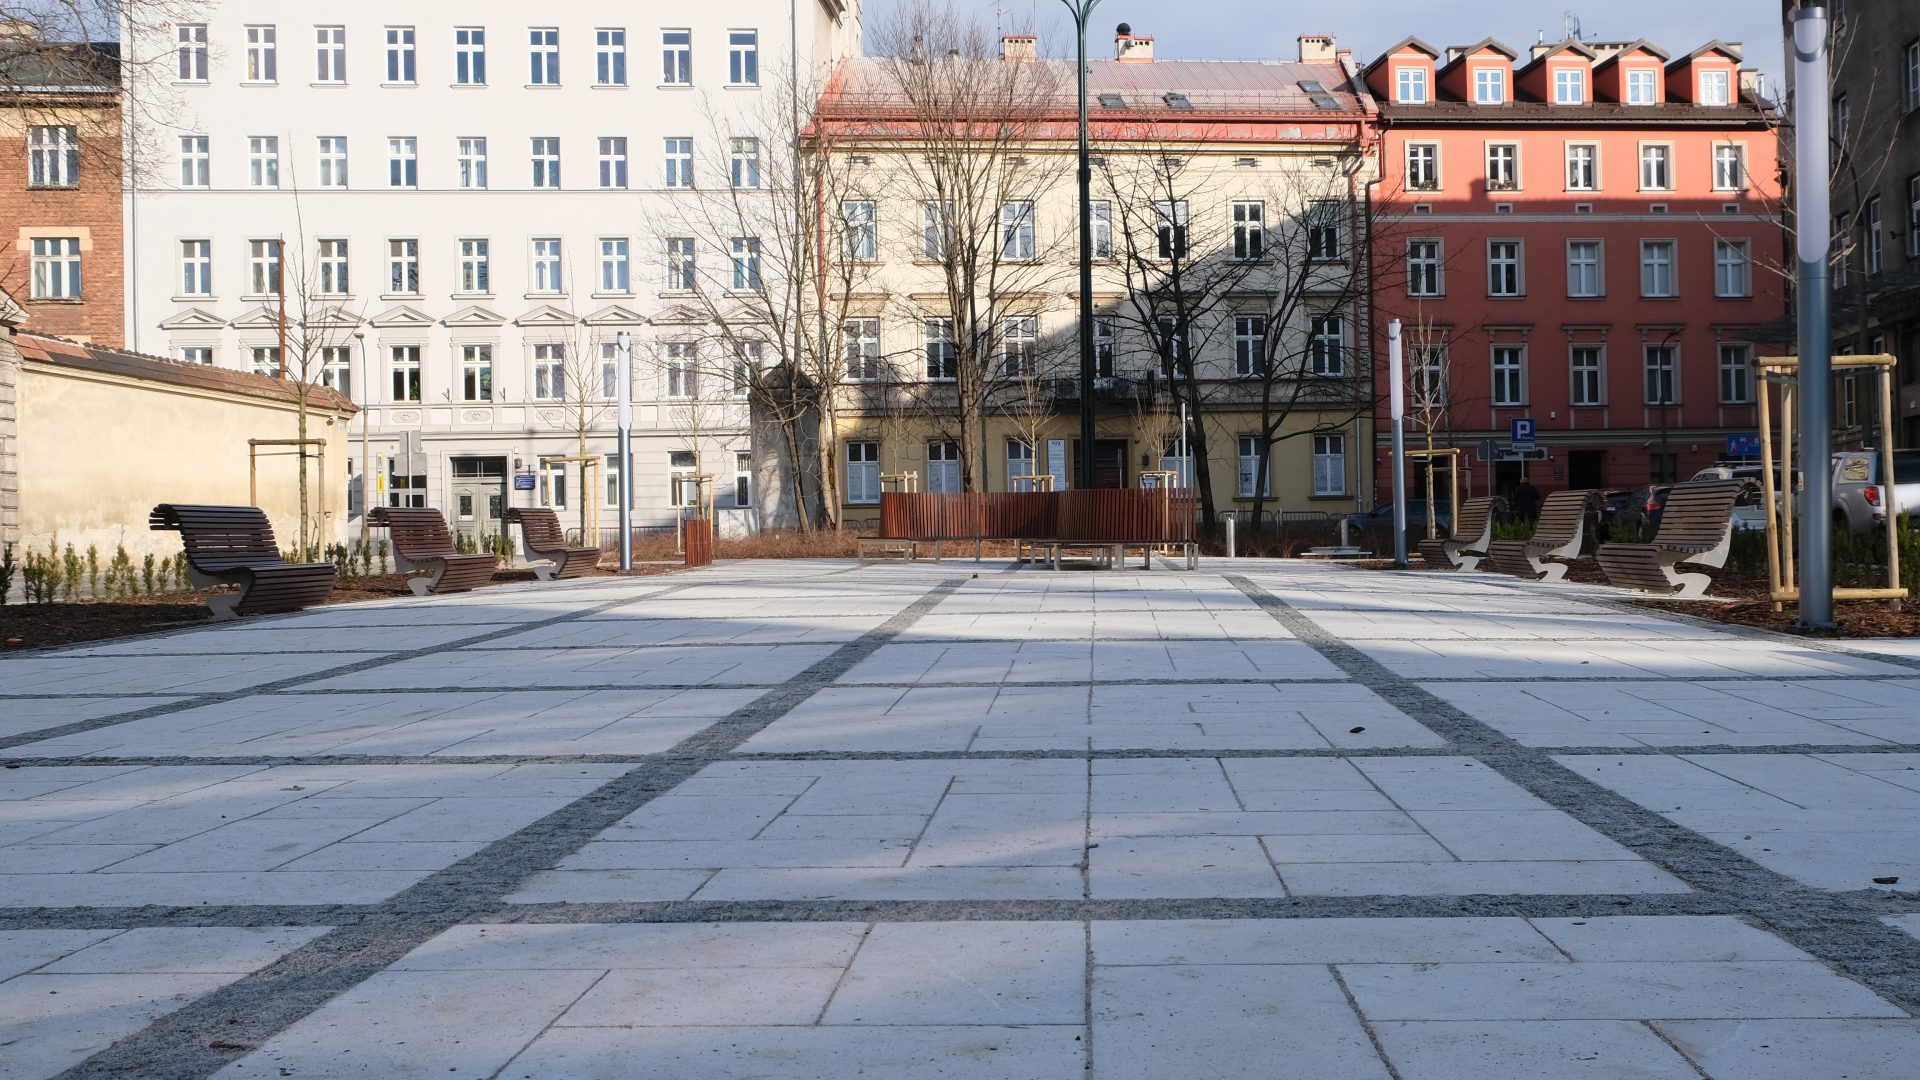 Niedawno zrewitalizowany plac Biskupi w Krakowie. Jego realizacja wywołała liczne kontrowersje. W tym dotyczące widocznej na zdjęciu ławki, która kosztowała 228 tys. złotych.